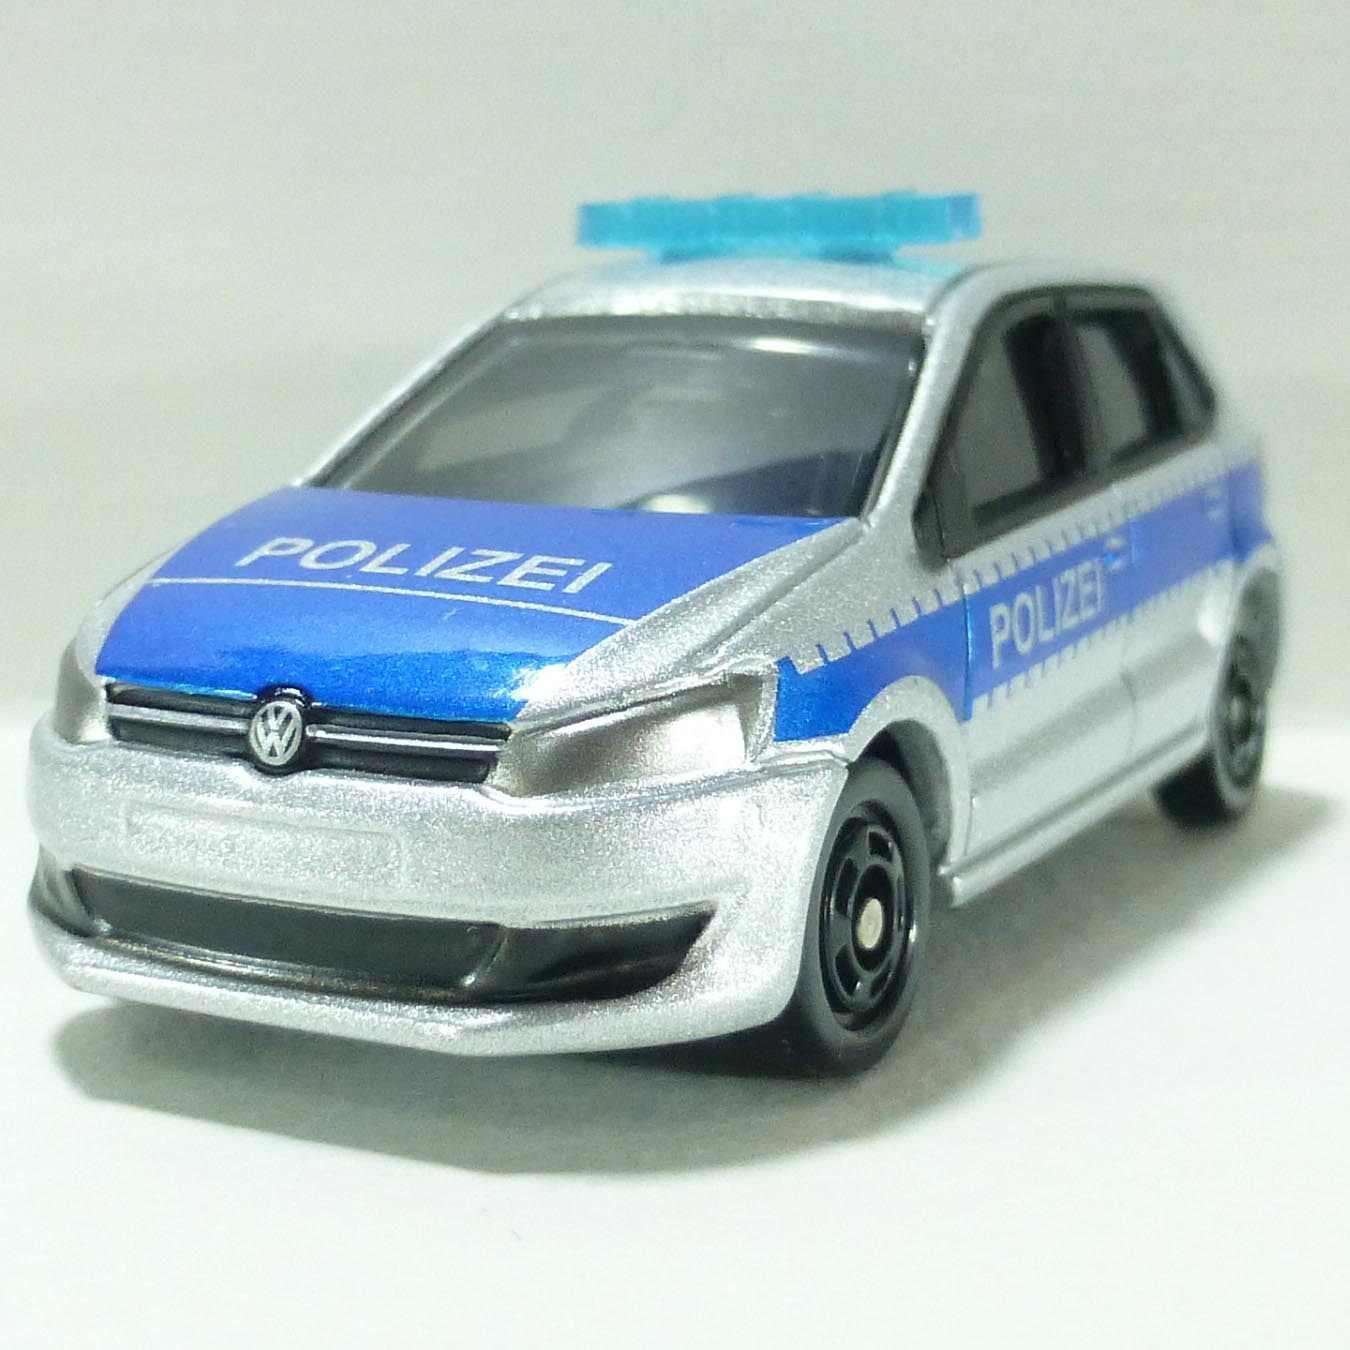 Xe mô hình cảnh sát Tomica Volkswagen Polo Police tỷ lệ 1/56